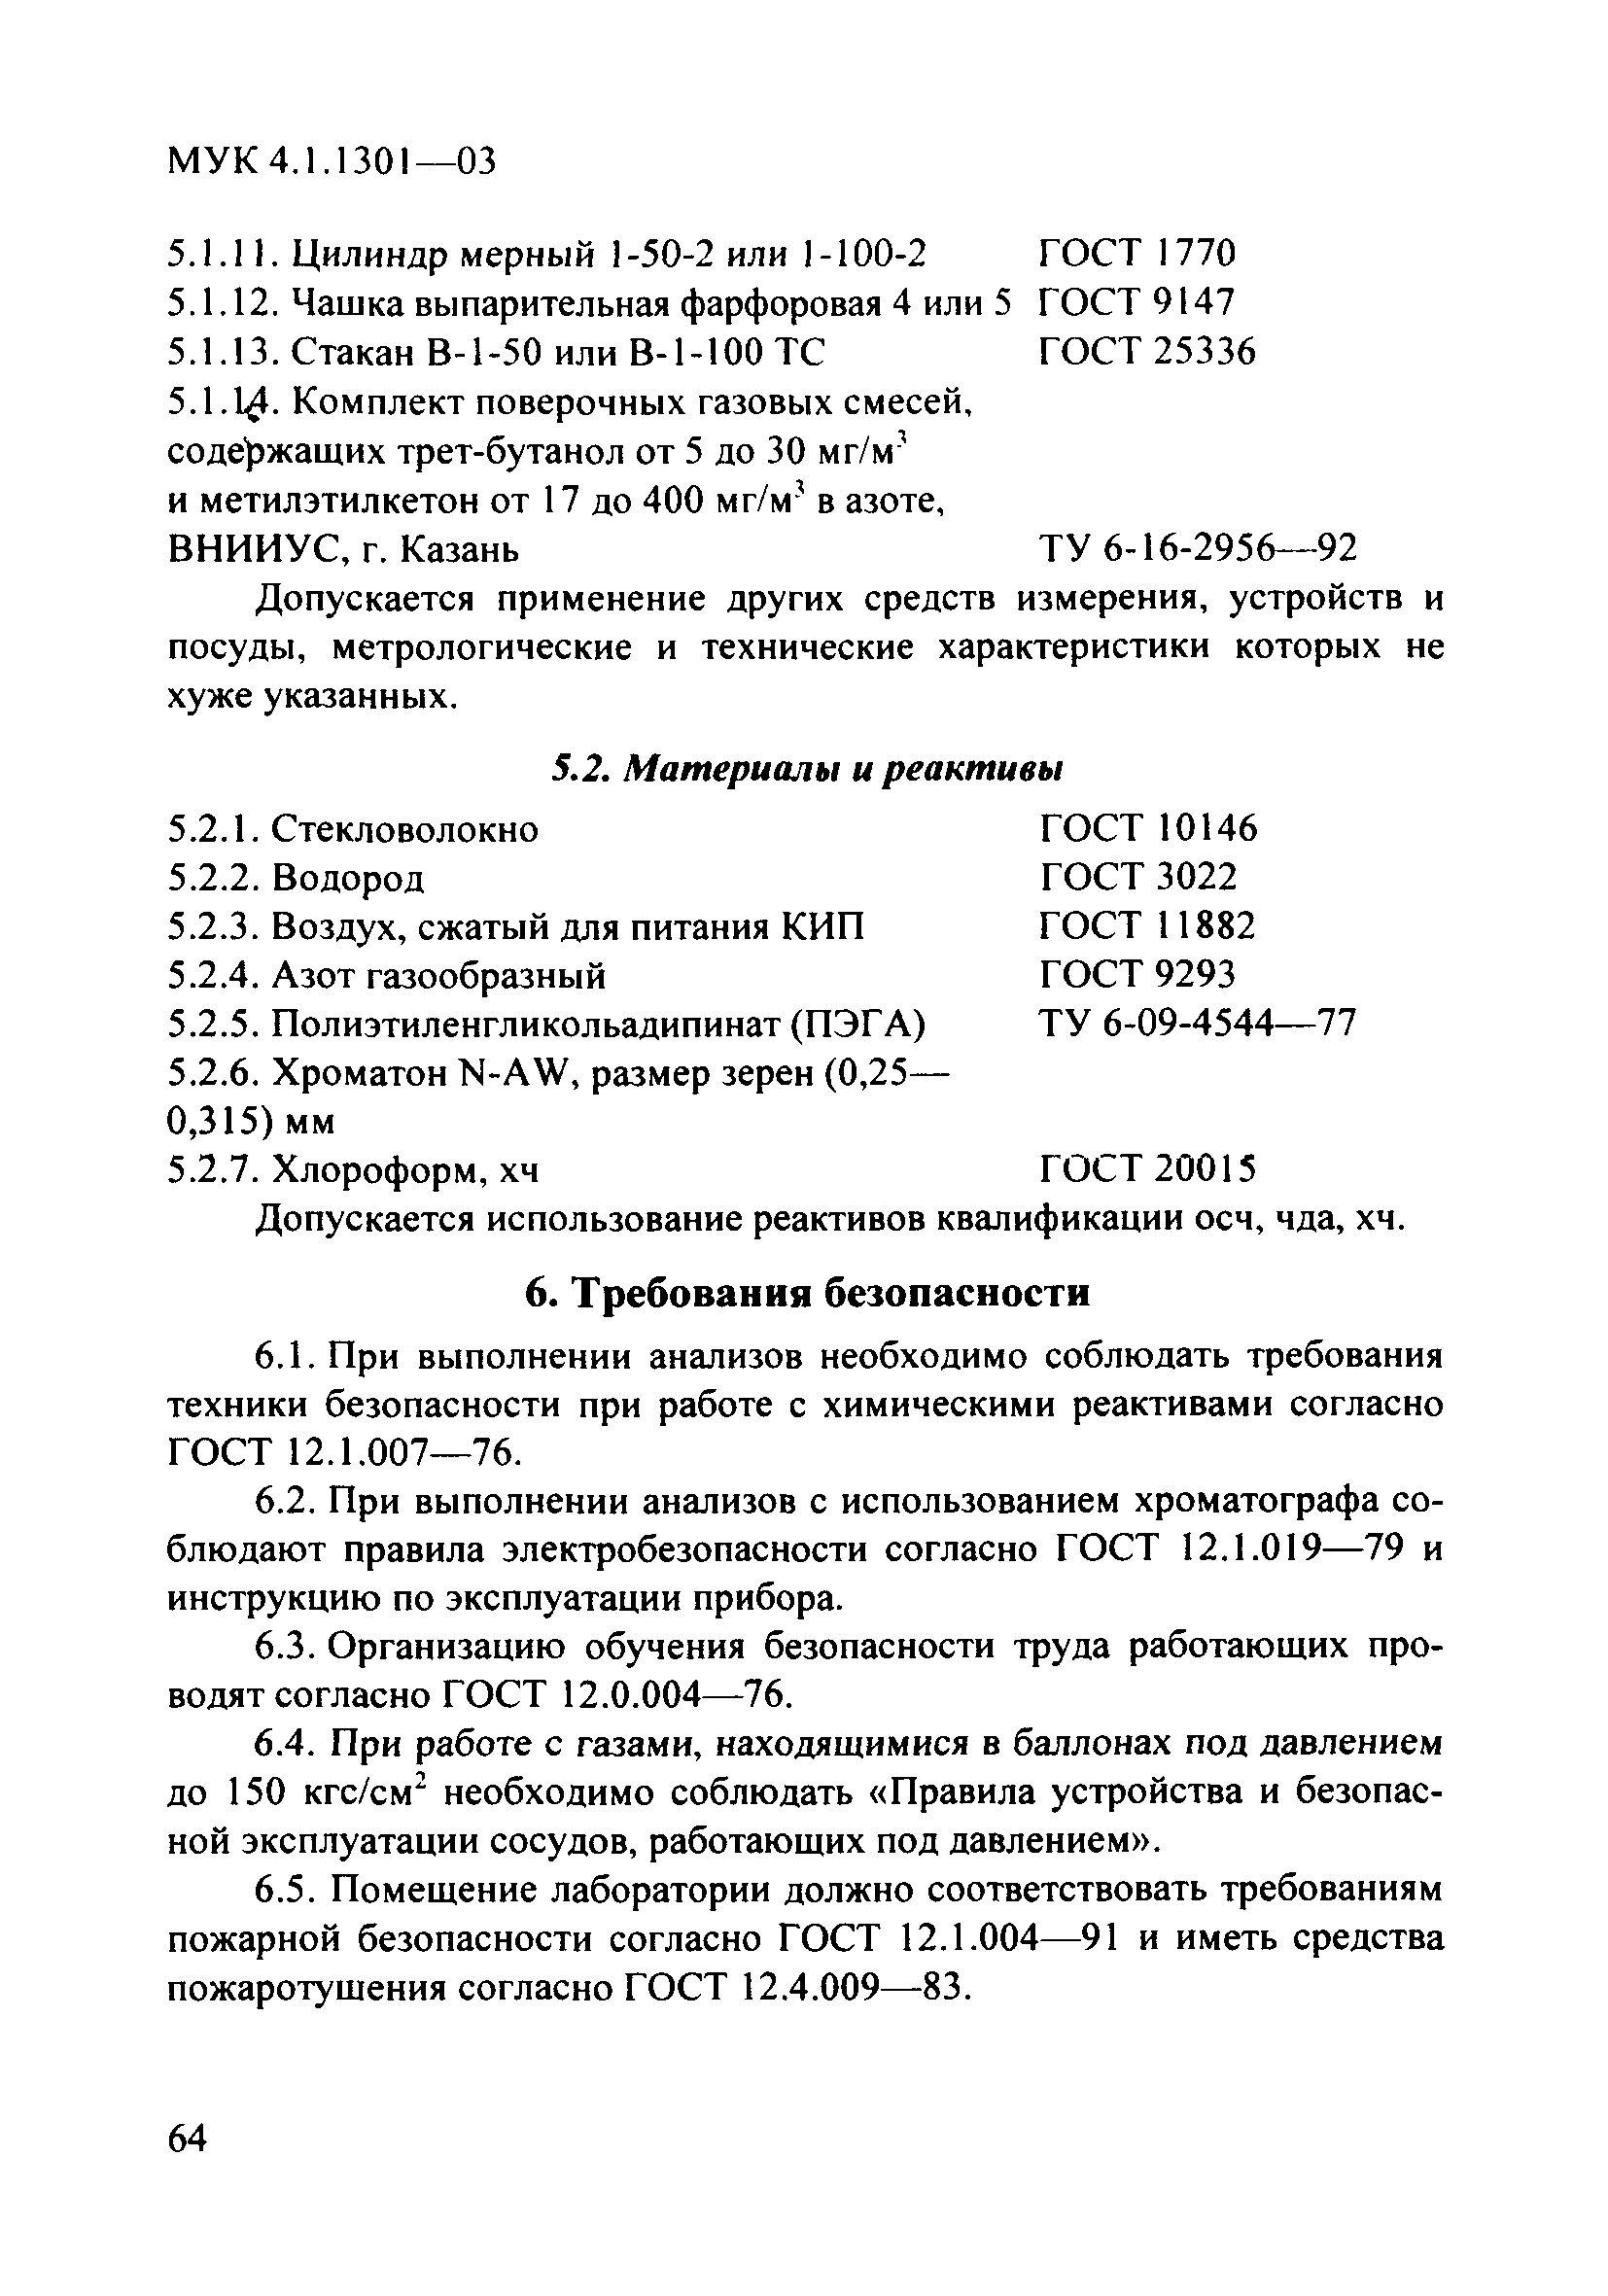 МУК 4.1.1301-03